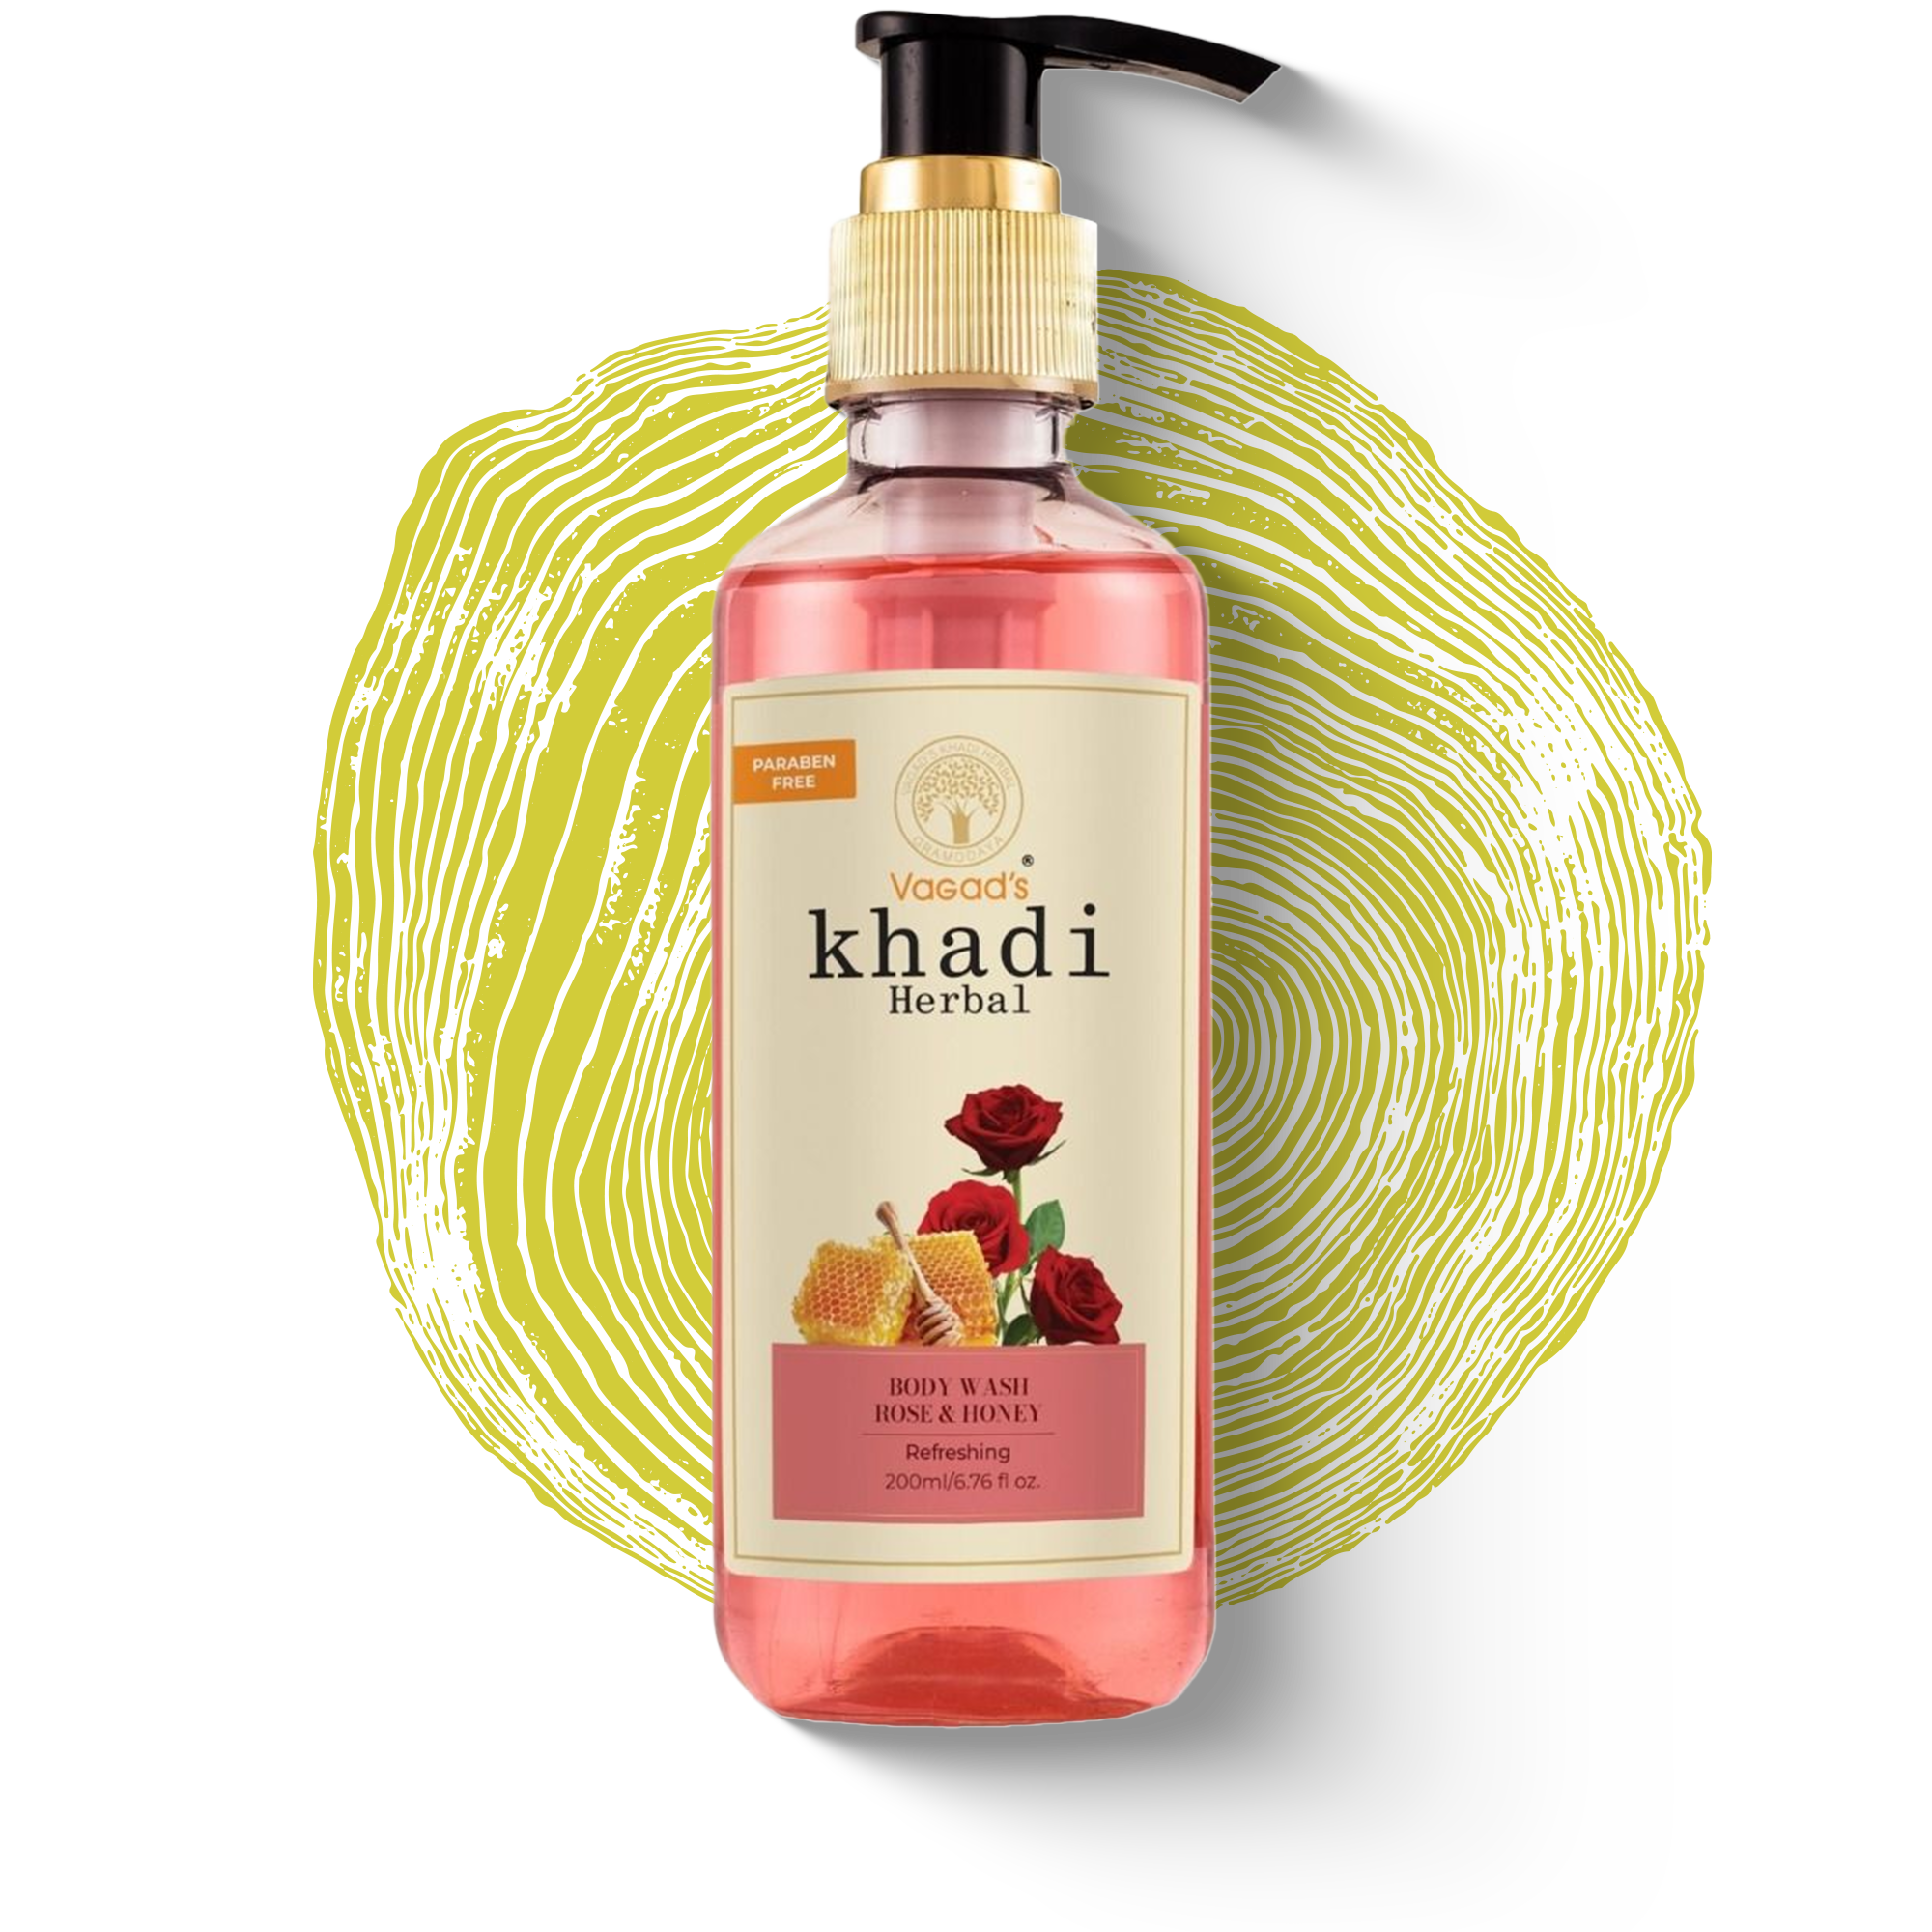 Vagad's Khadi Rose & Honey Body Wash